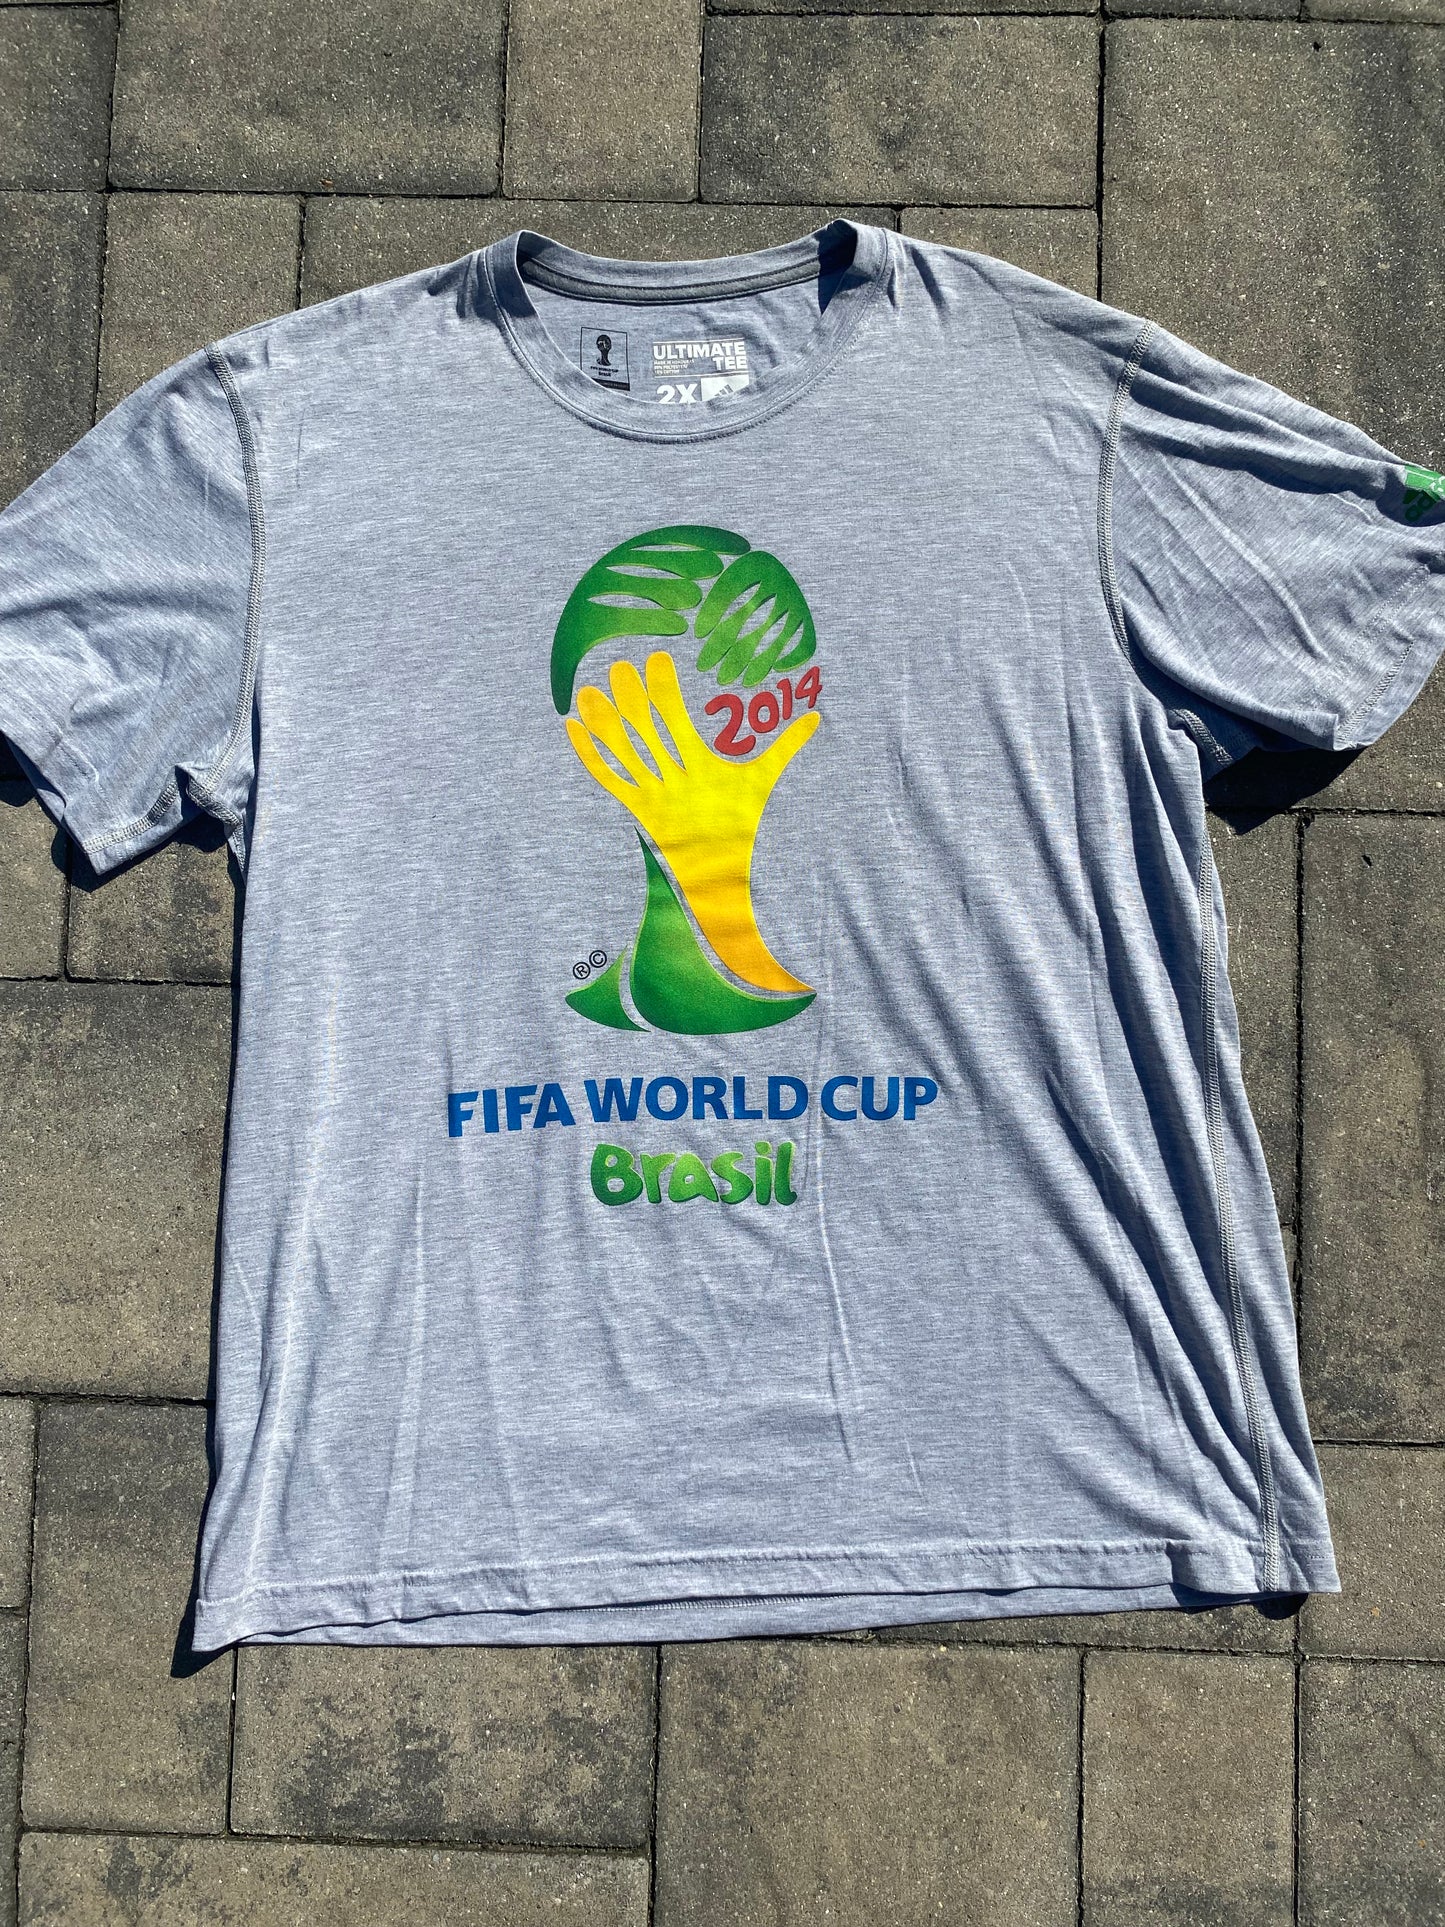 2014 Brazil Fifa World Cup Shirt (Official)